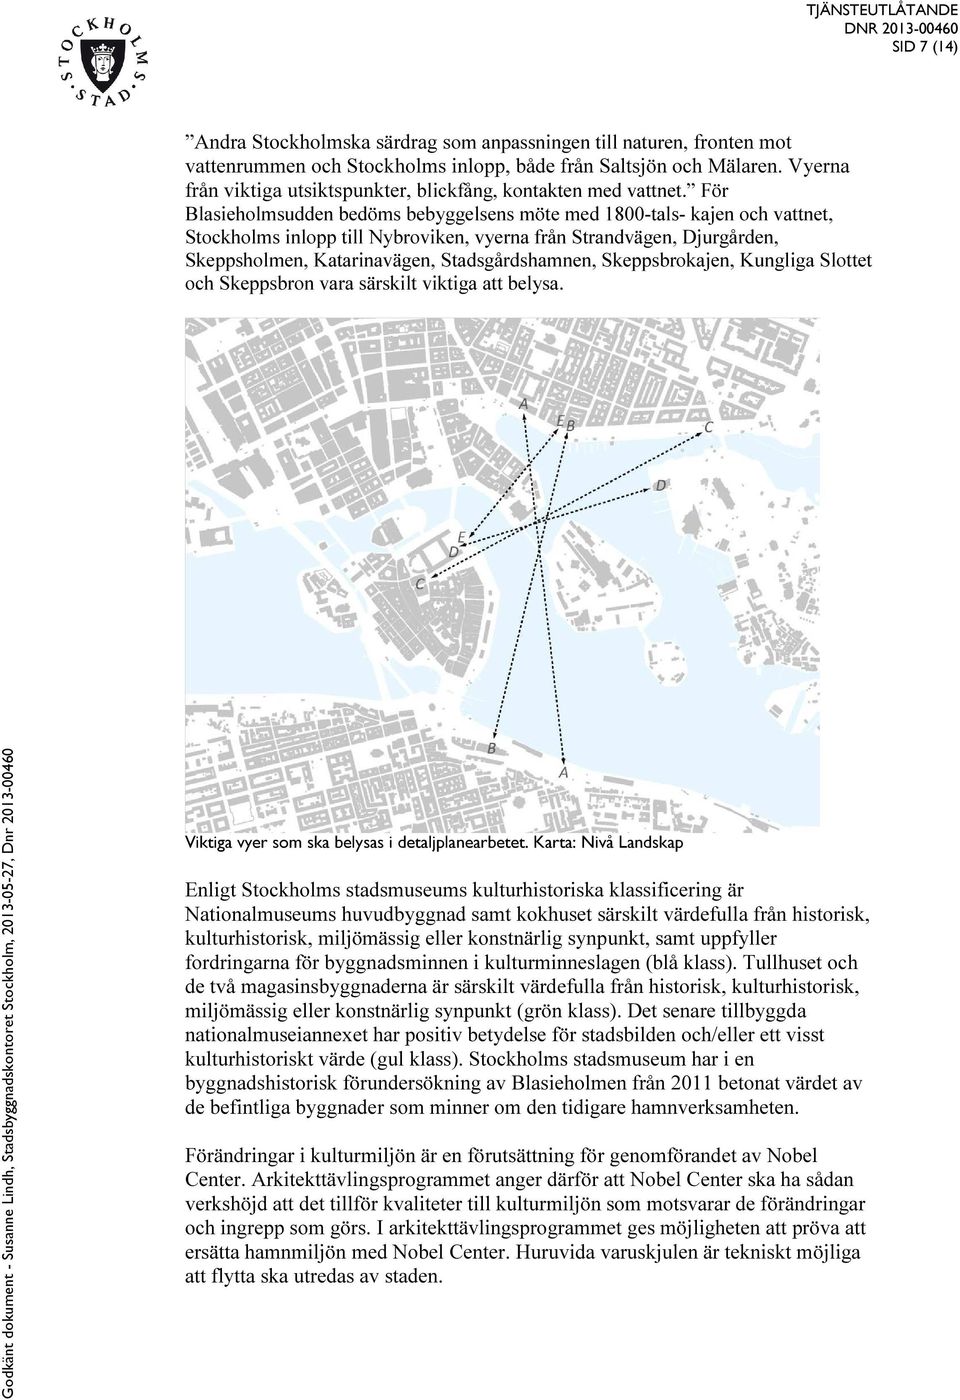 För Blasieholmsudden bedöms bebyggelsens möte med 1800-tals- kajen och vattnet, Stockholms inlopp till Nybroviken, vyerna från Strandvägen, Djurgården, Skeppsholmen, Katarinavägen, Stadsgårdshamnen,